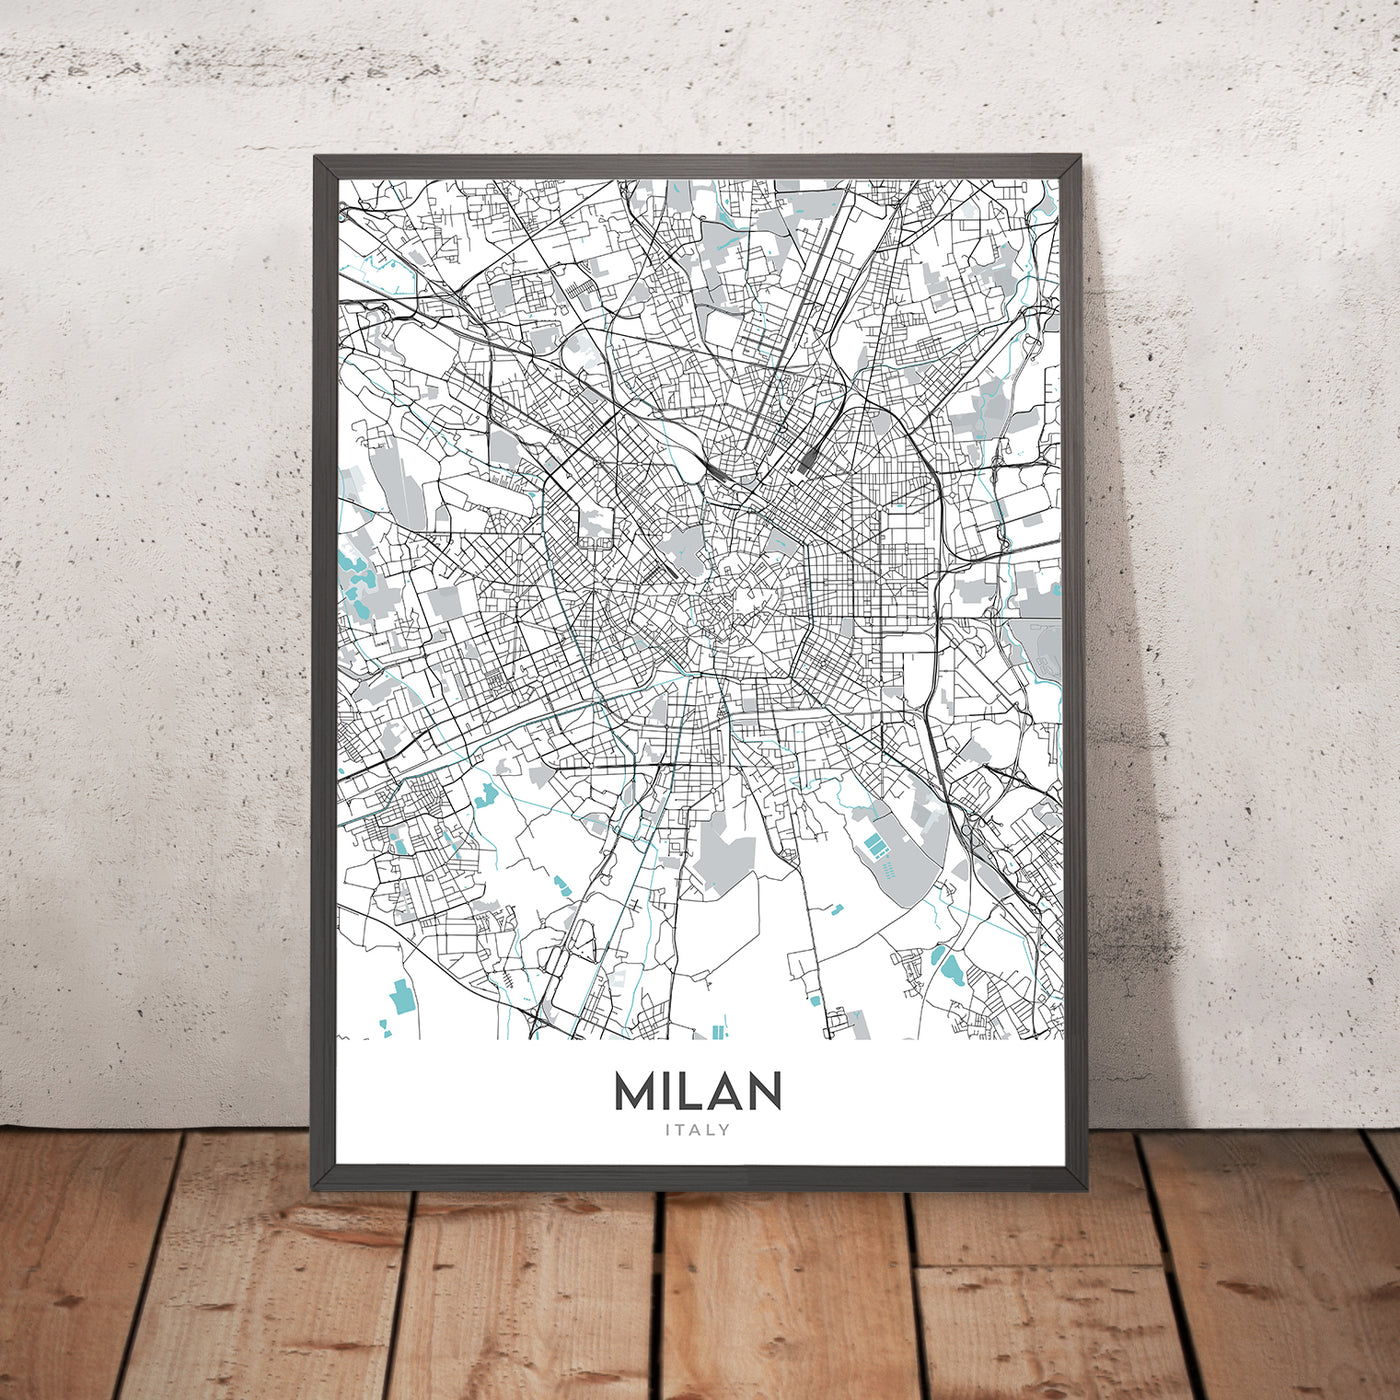 Moderner Stadtplan von Mailand, Italien: Duomo, Galleria, Castello, Navigli, Brera